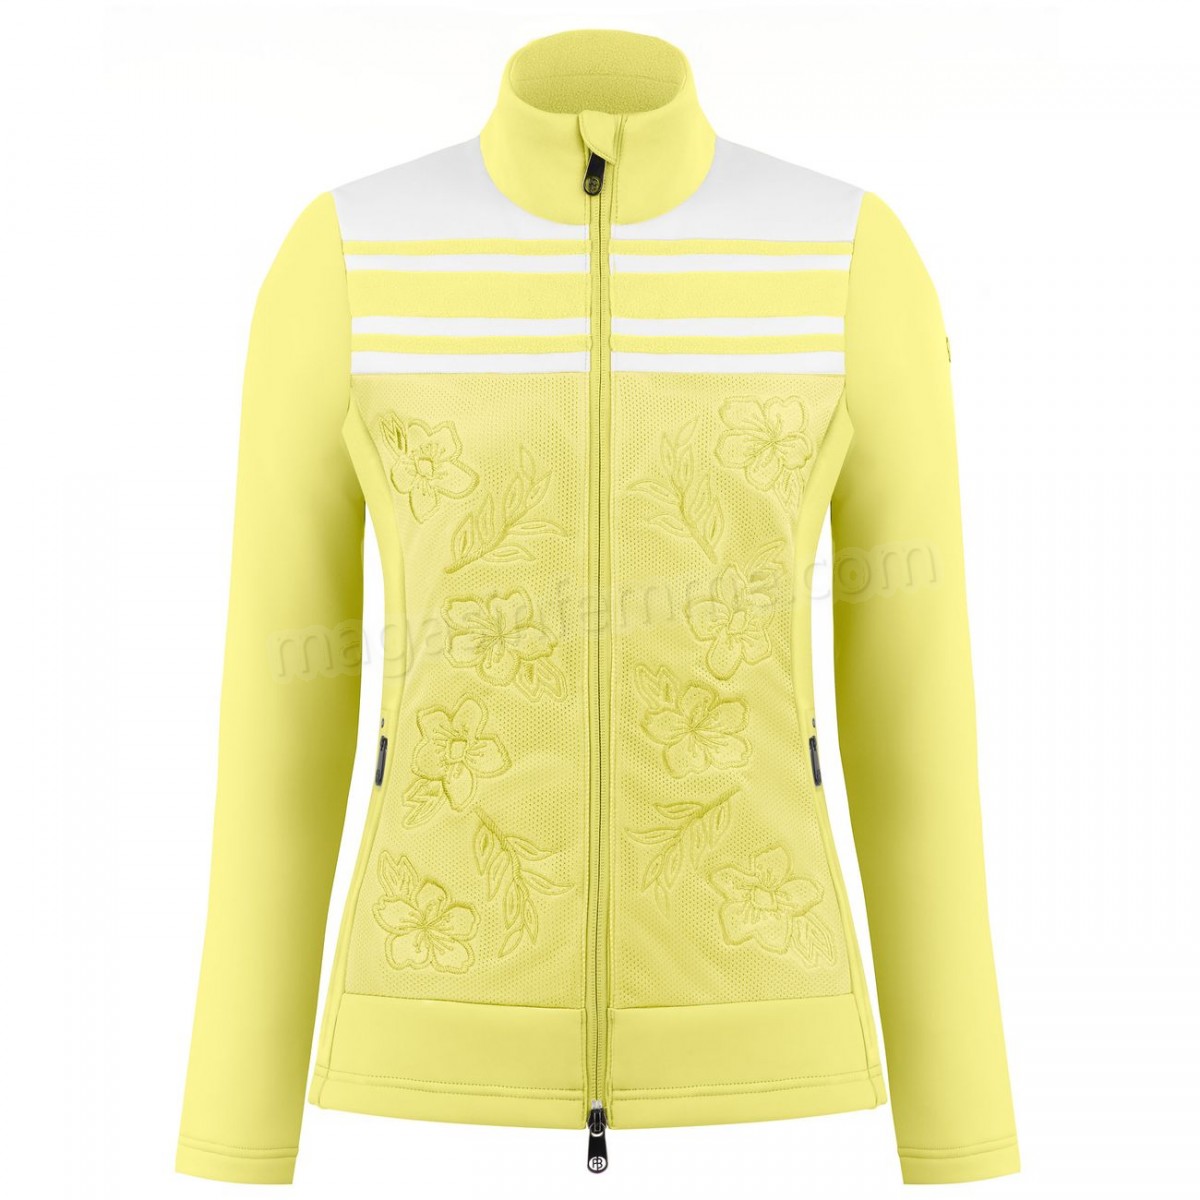 Poivre Blanc-Sports d'hiver femme POIVRE BLANC Veste Polaire Poivre Blanc Hybrid Stretch Fleece Jacket 1605 Multico Yellow Femme en solde - -0